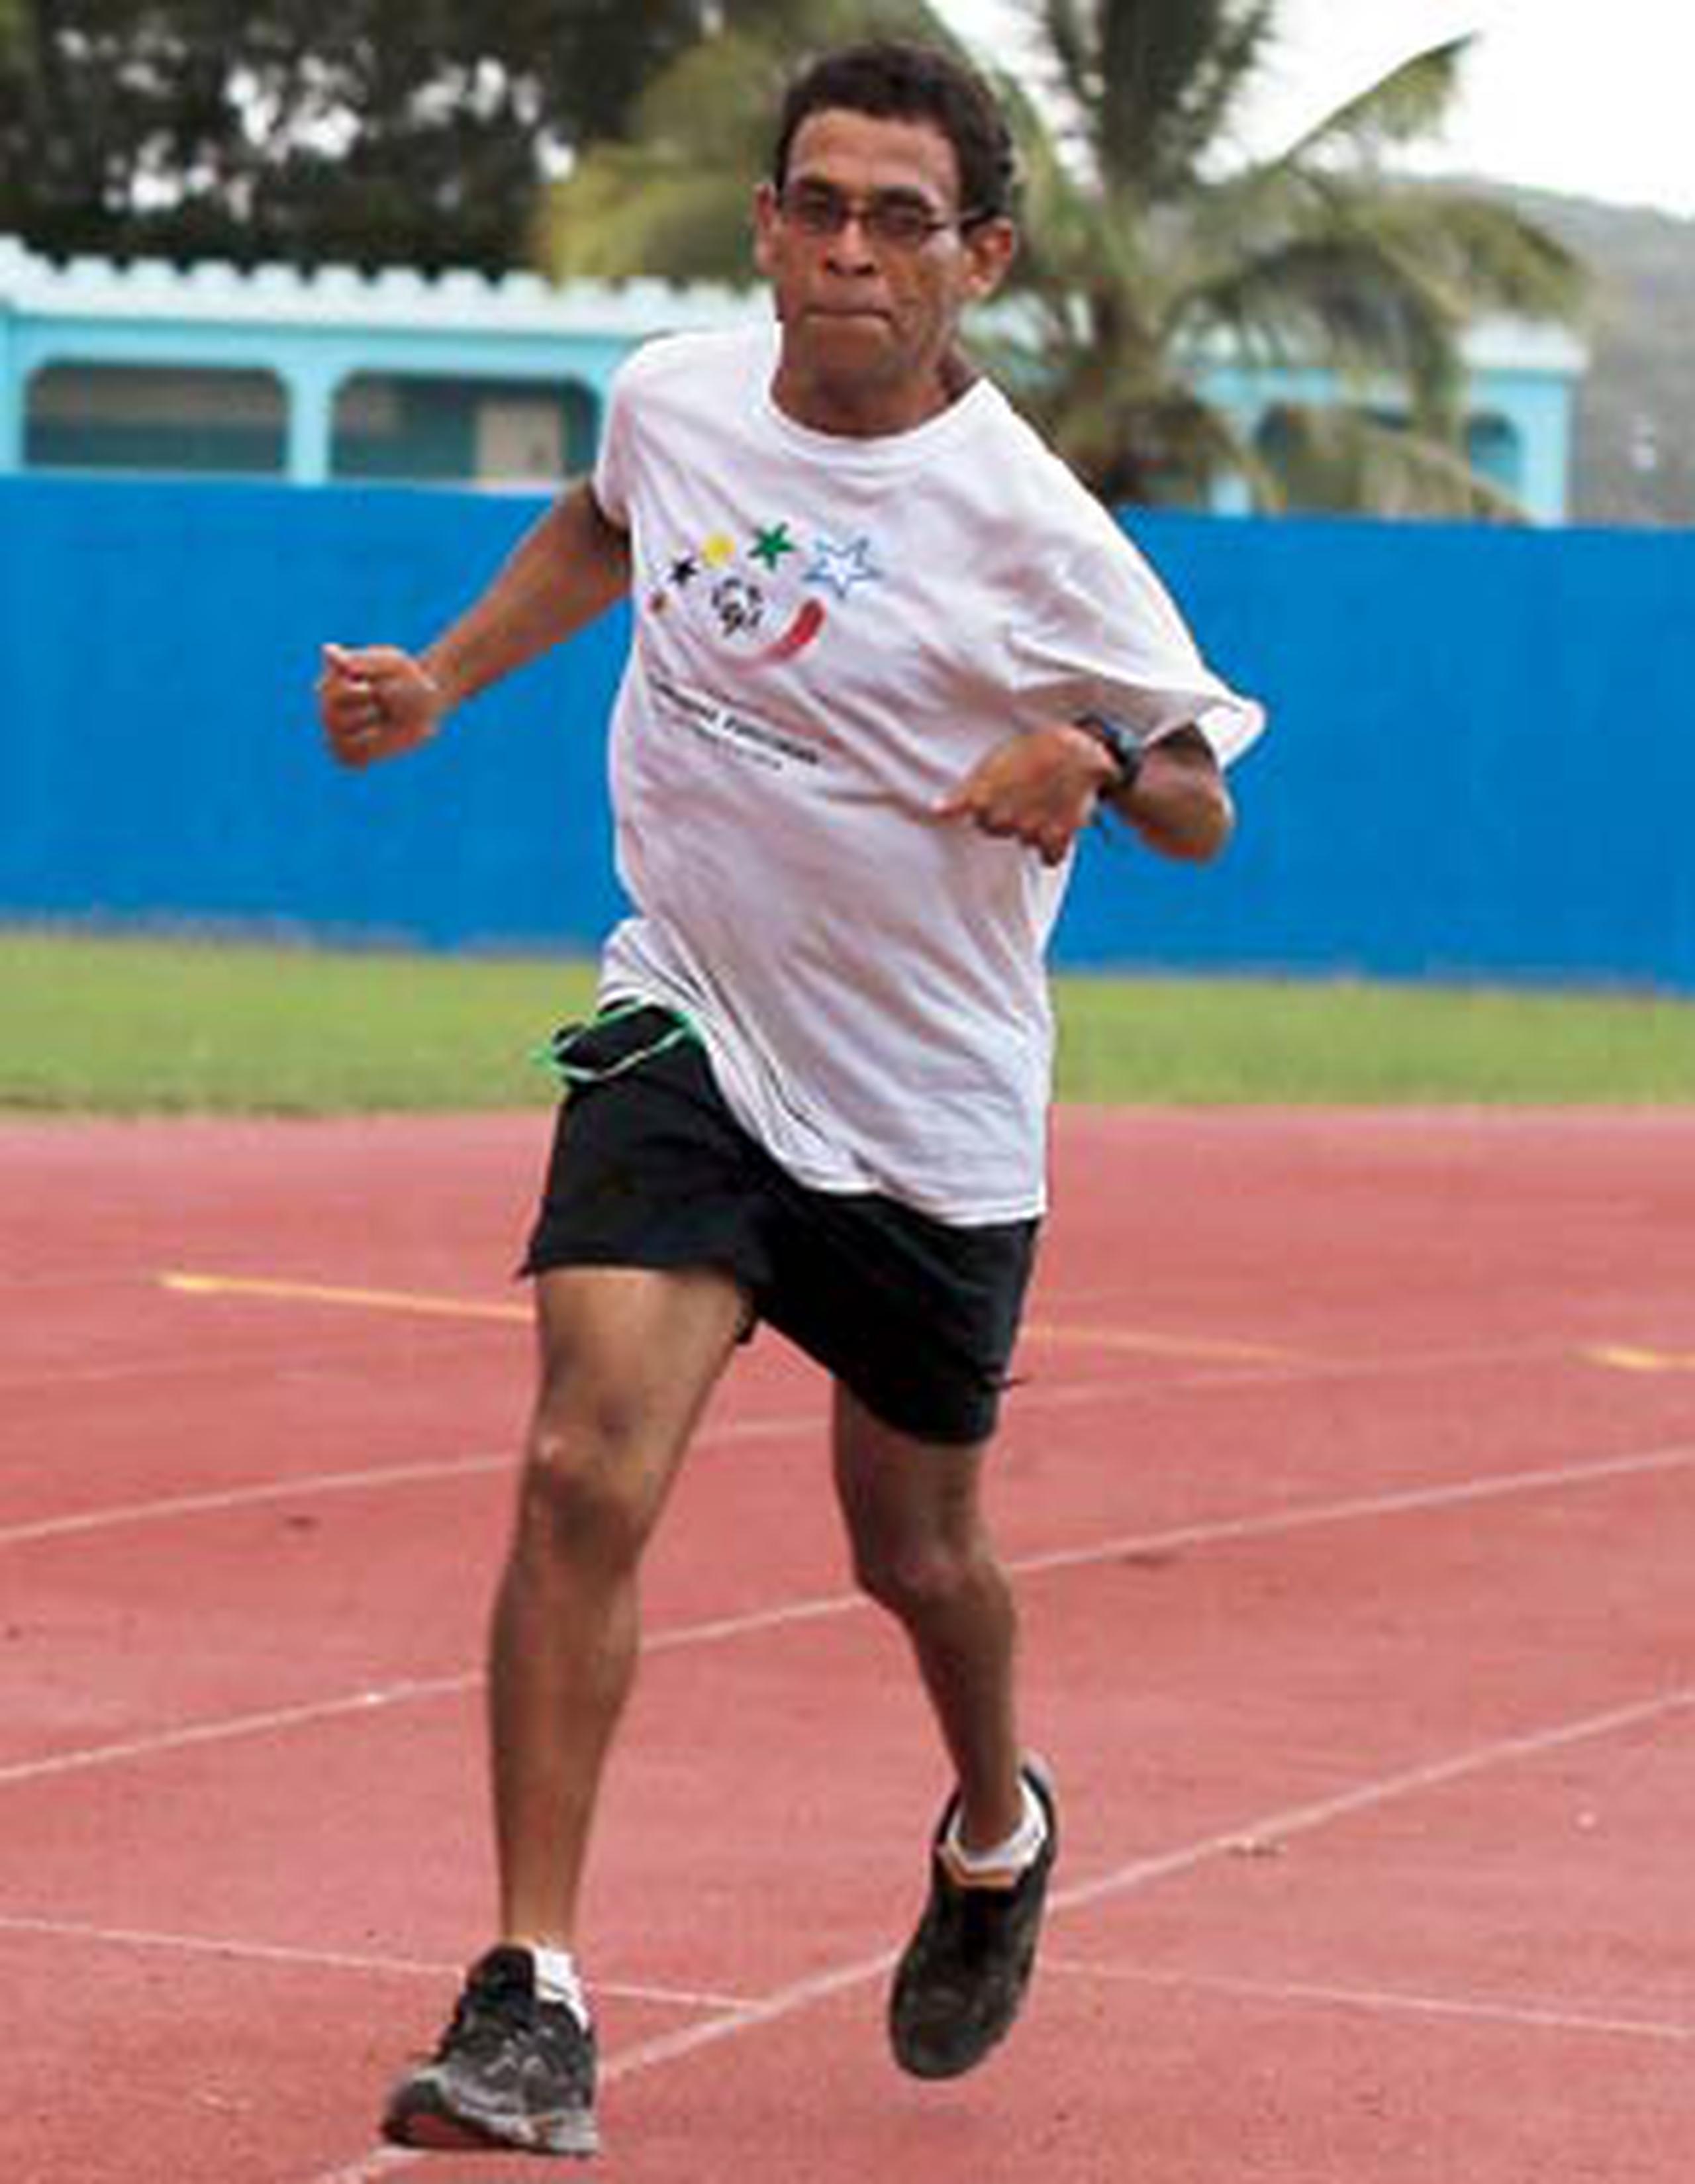 El corredor ha participado en eventos de diferentes distancias y en el Medio Maratón San Blas. Además, ganó plata en 1,500 metros y en 5,000 metros en los Juegos de Puerto Rico 2015. (juan.alicea@gfrmedia.com)